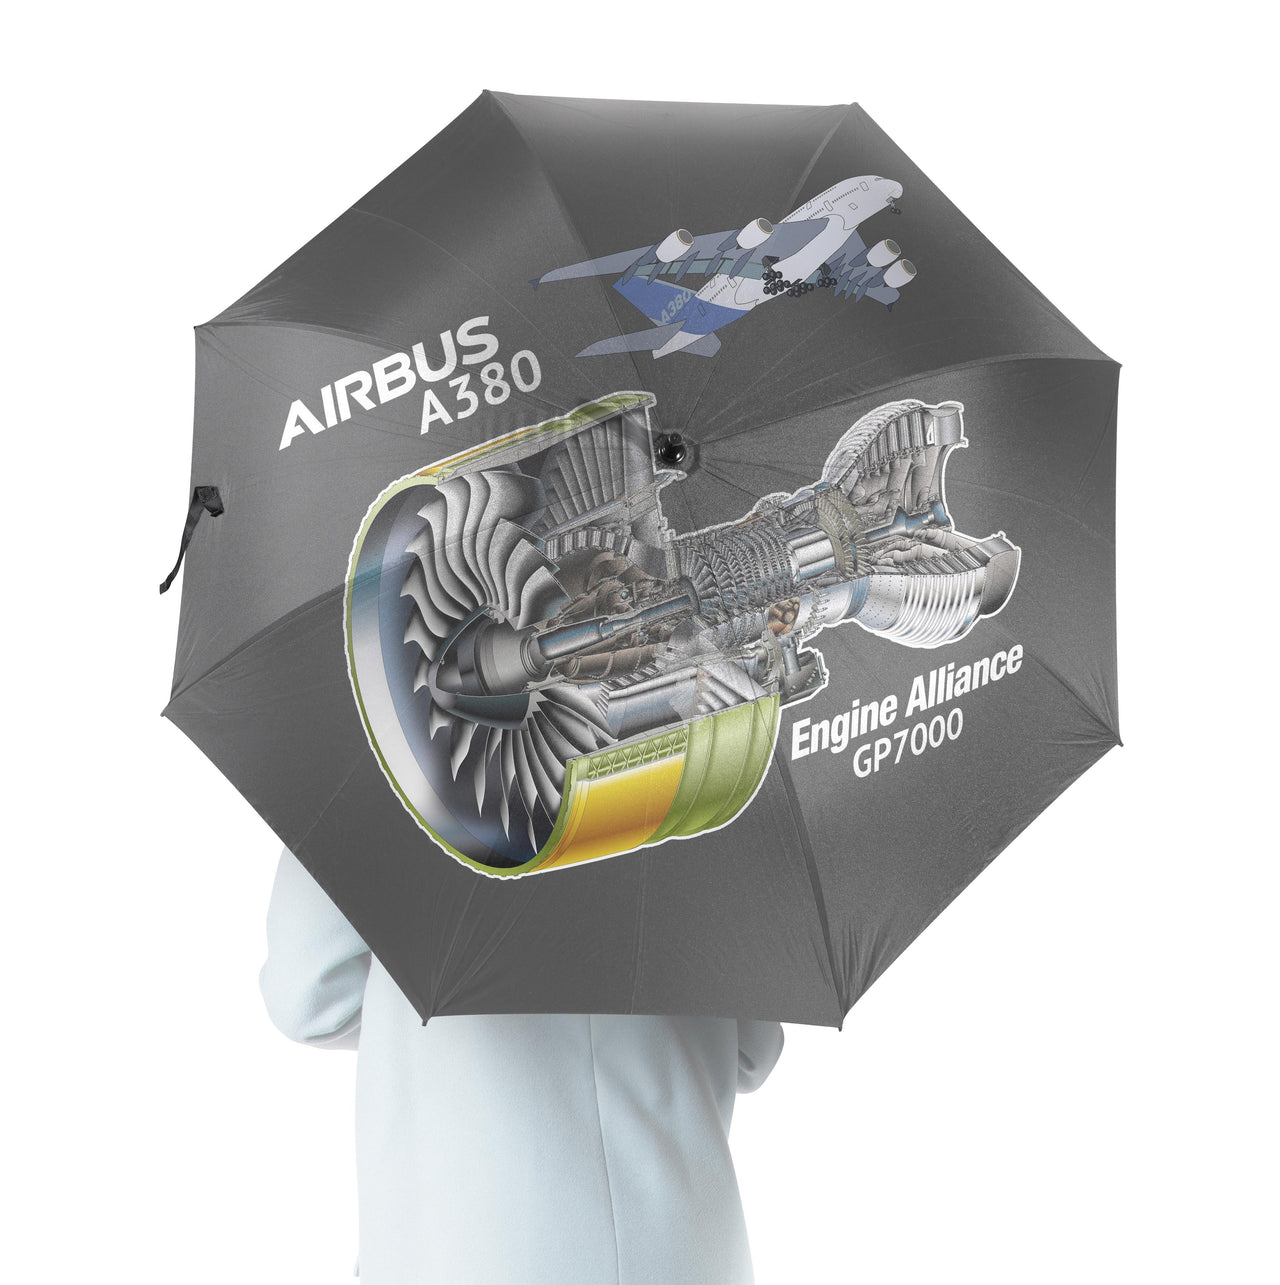 Airbus A380 & GP7000 Engine Designed Umbrella